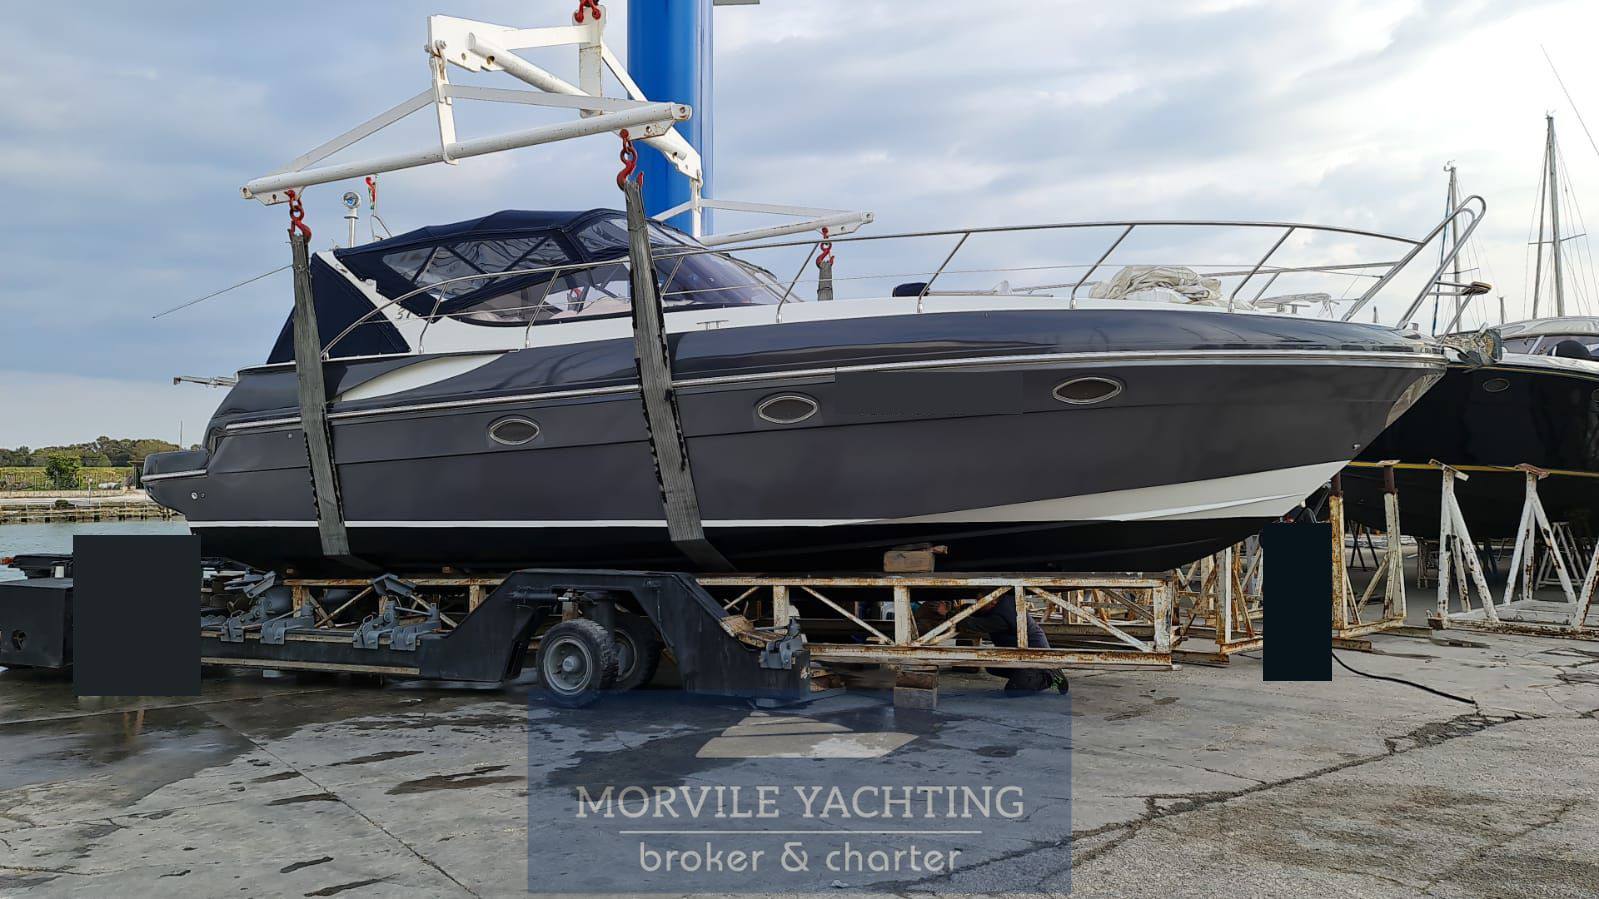 INNOVAZIONI & PROGETTI Mira 37 Barca a motore usata in vendita